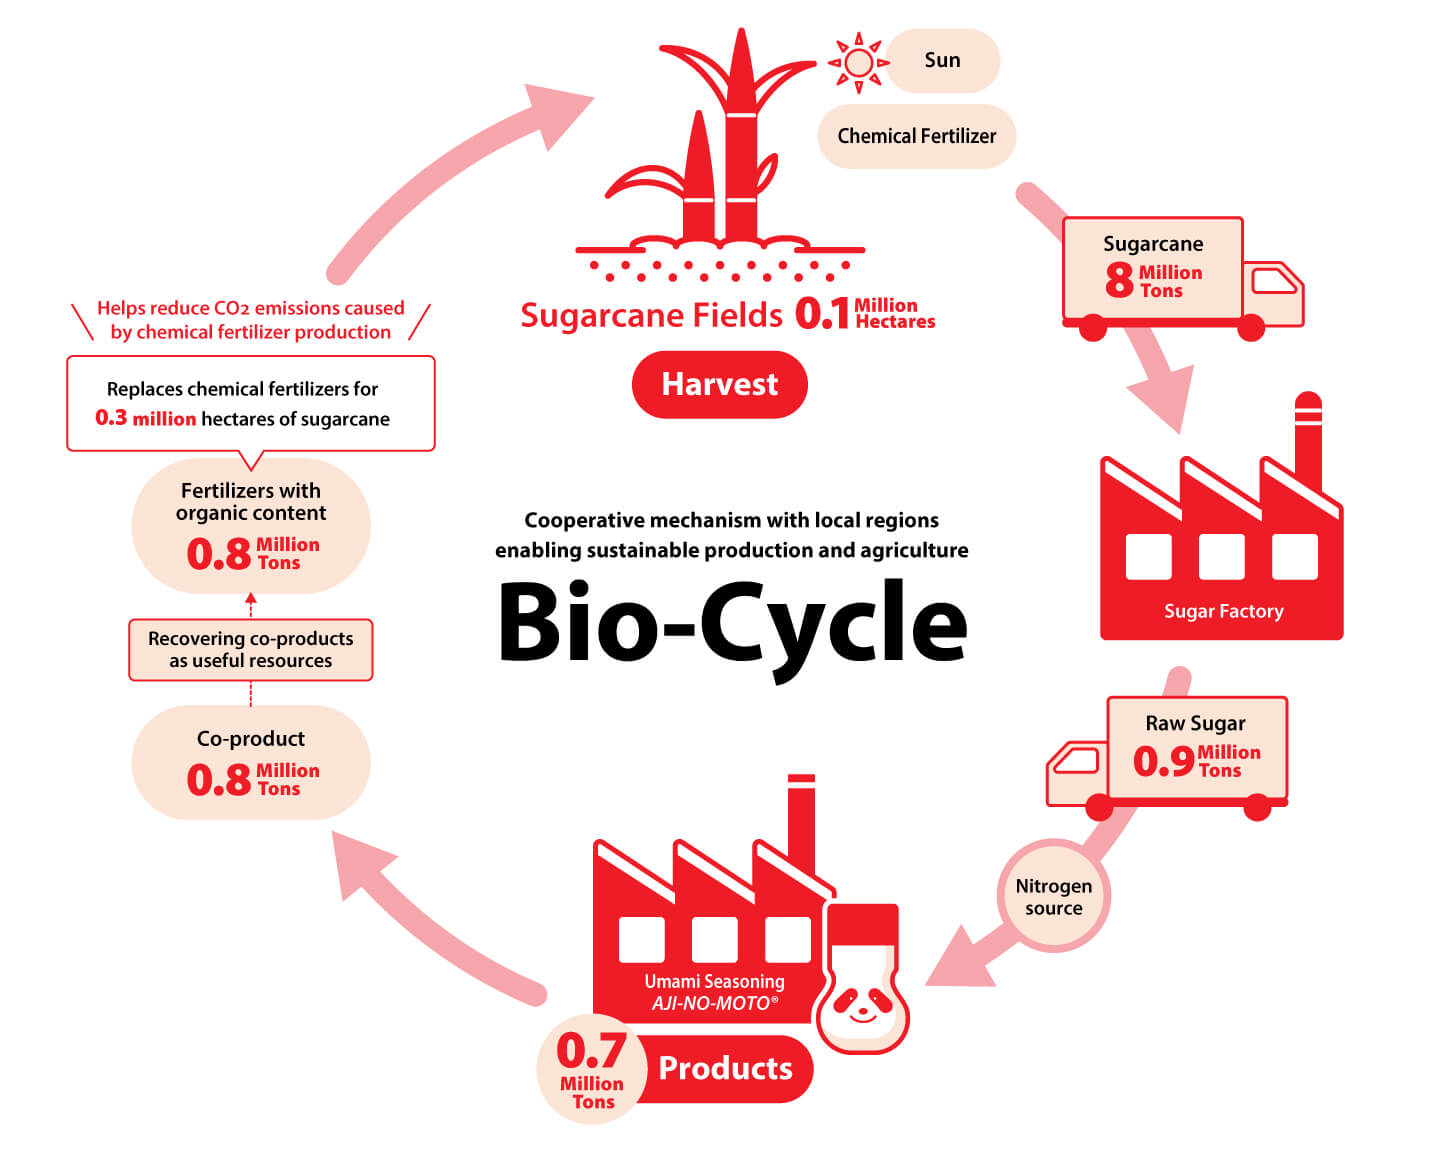 The Ajinomoto Group Bio-cycle